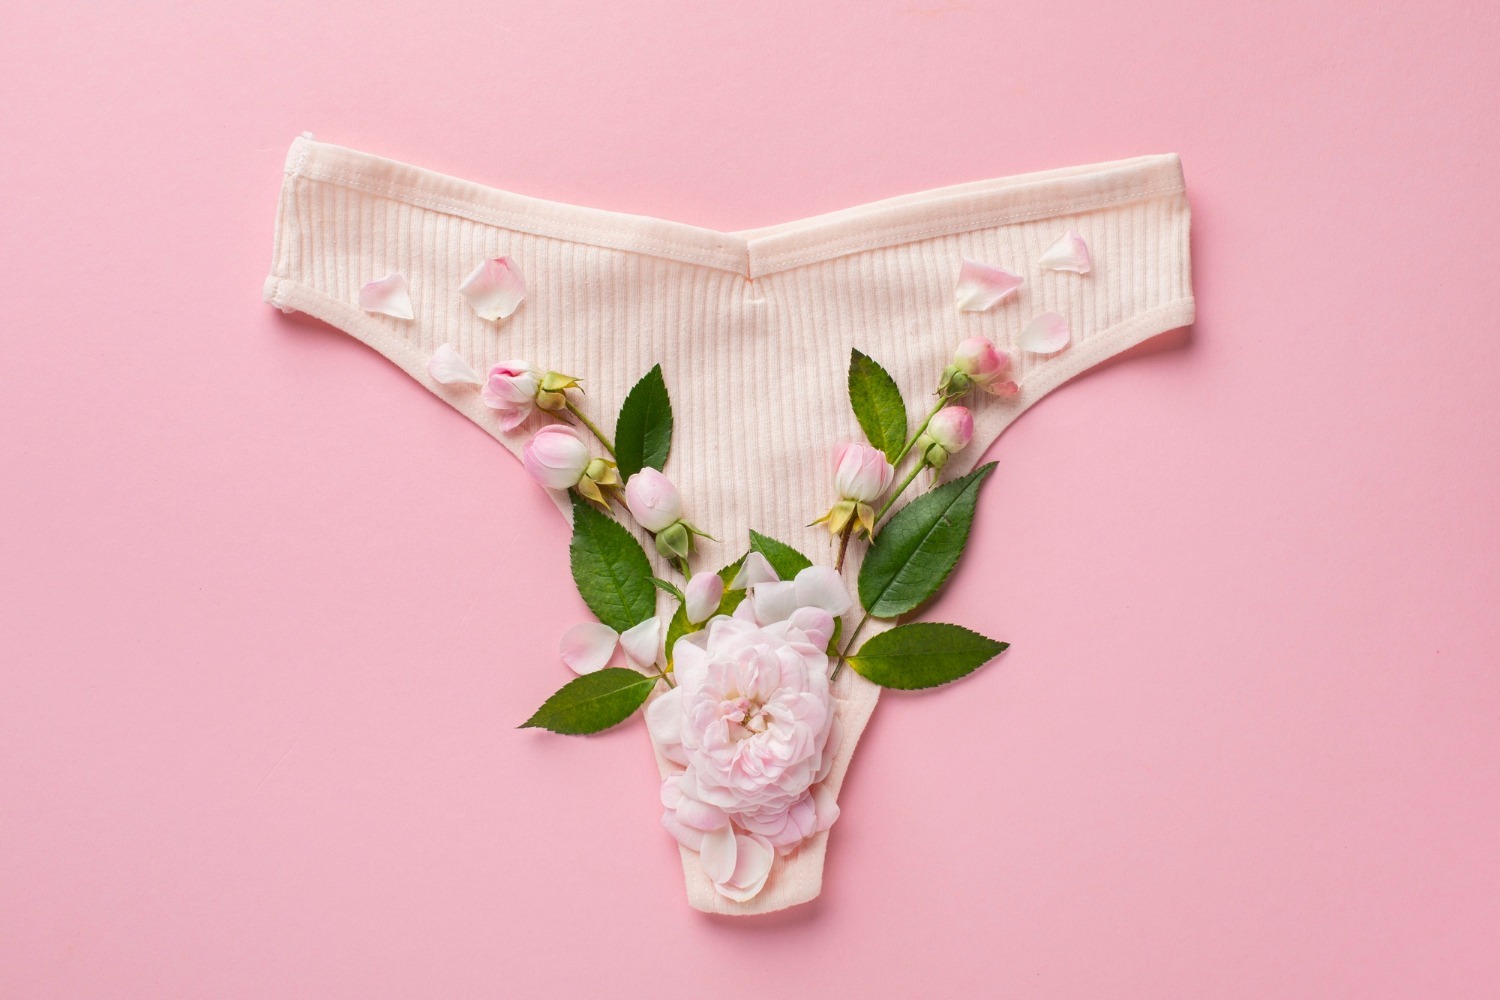 Chiloții Menstruali: O Alternativă Confortabilă și Ecologică pentru Perioada Menstruală